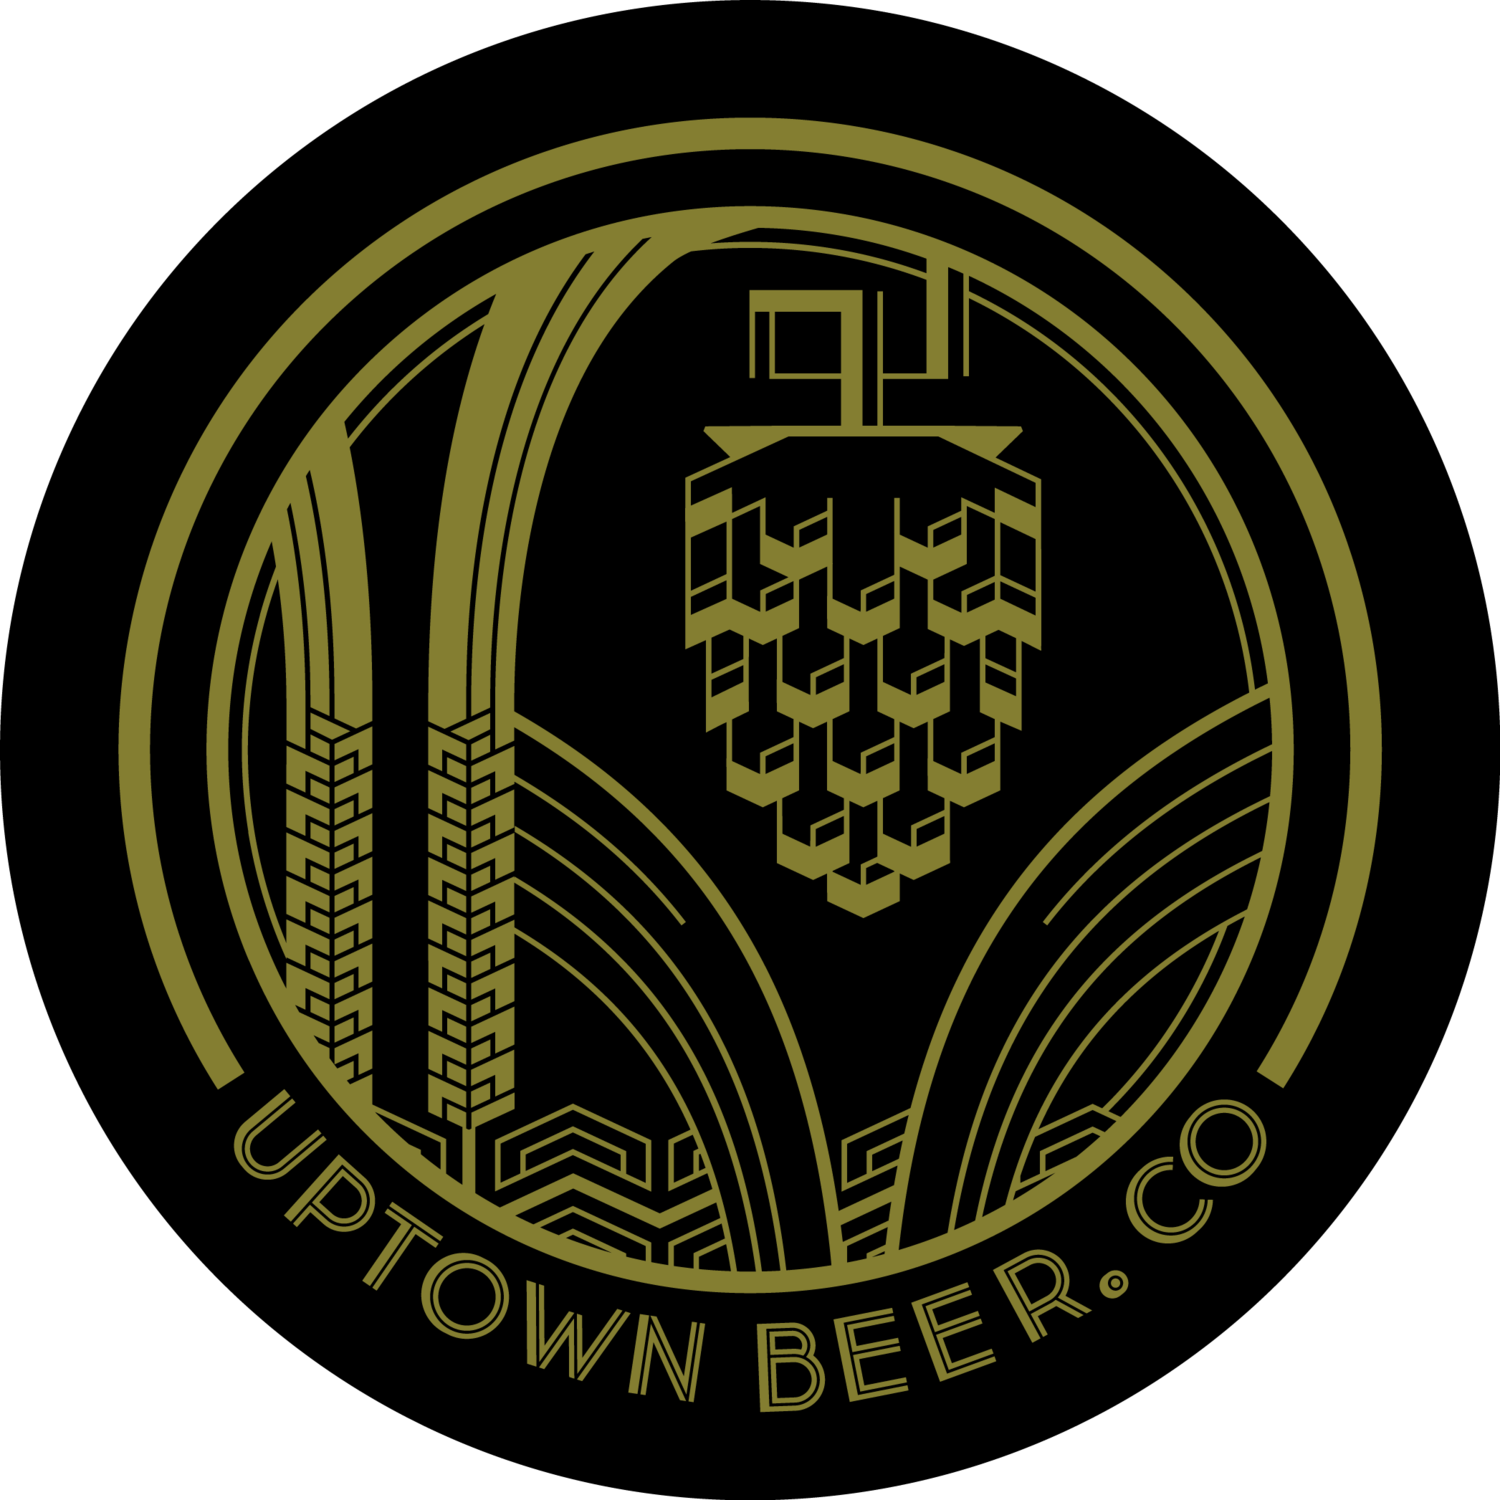 Uptown Beer Co.